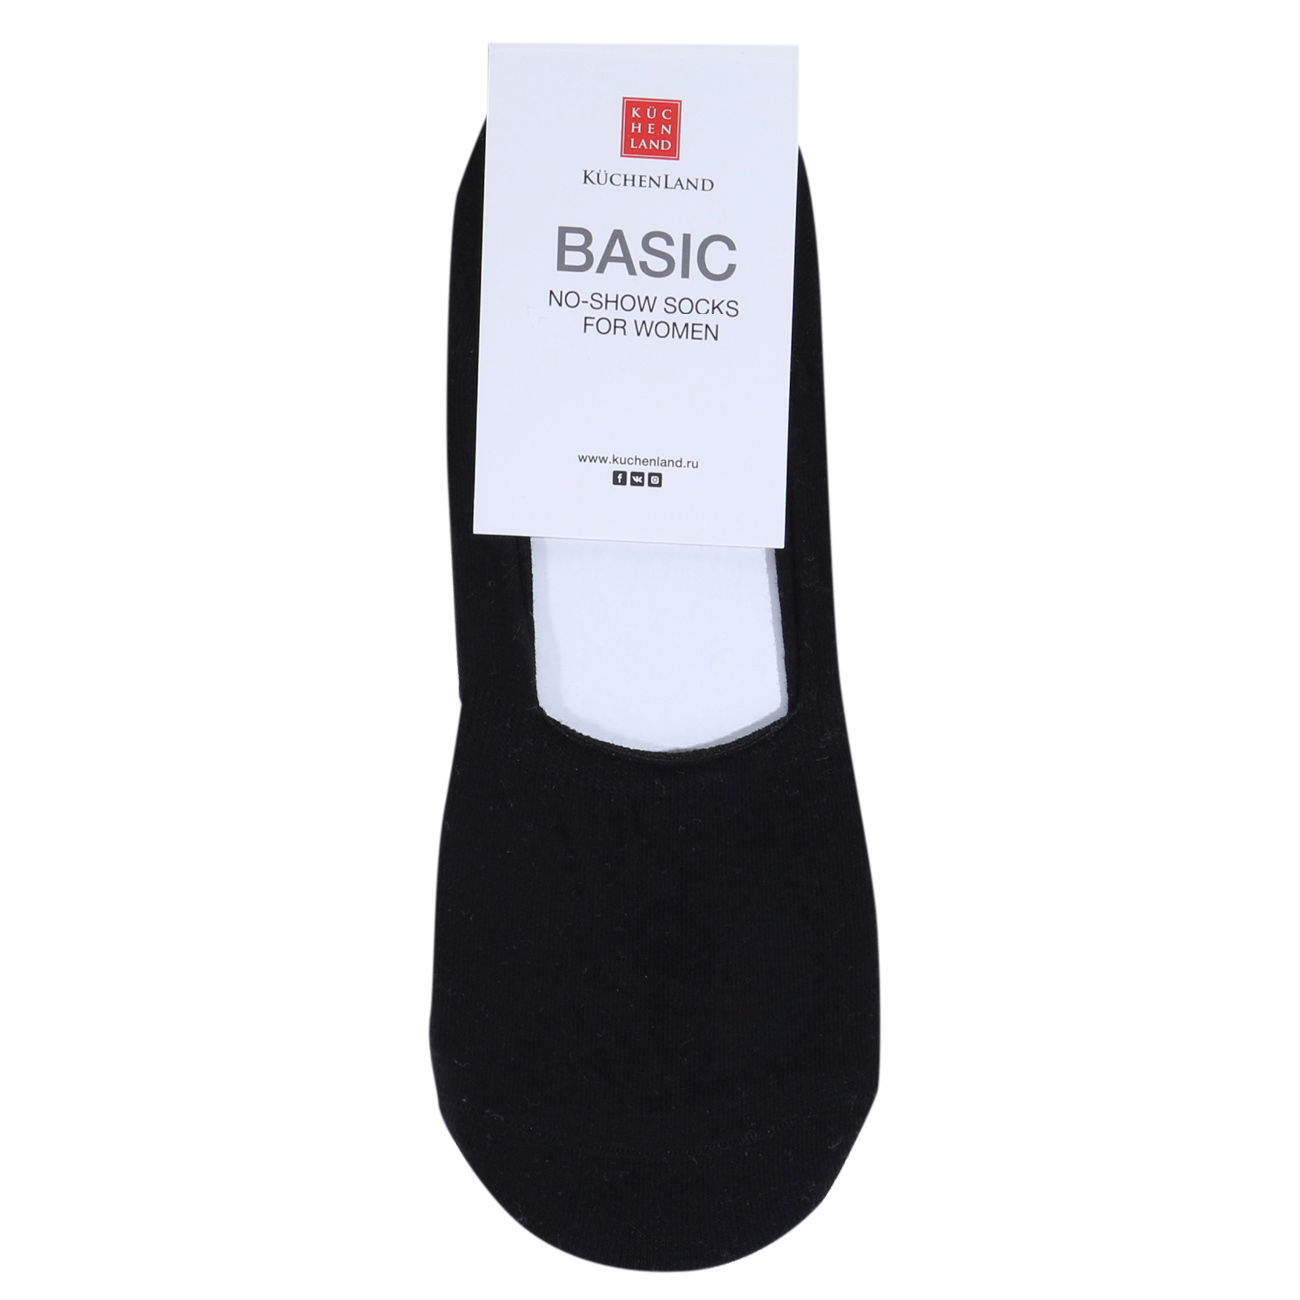 Women's track socks, SizeSize 36-38, cotton / polyester, black, Basic изображение № 2